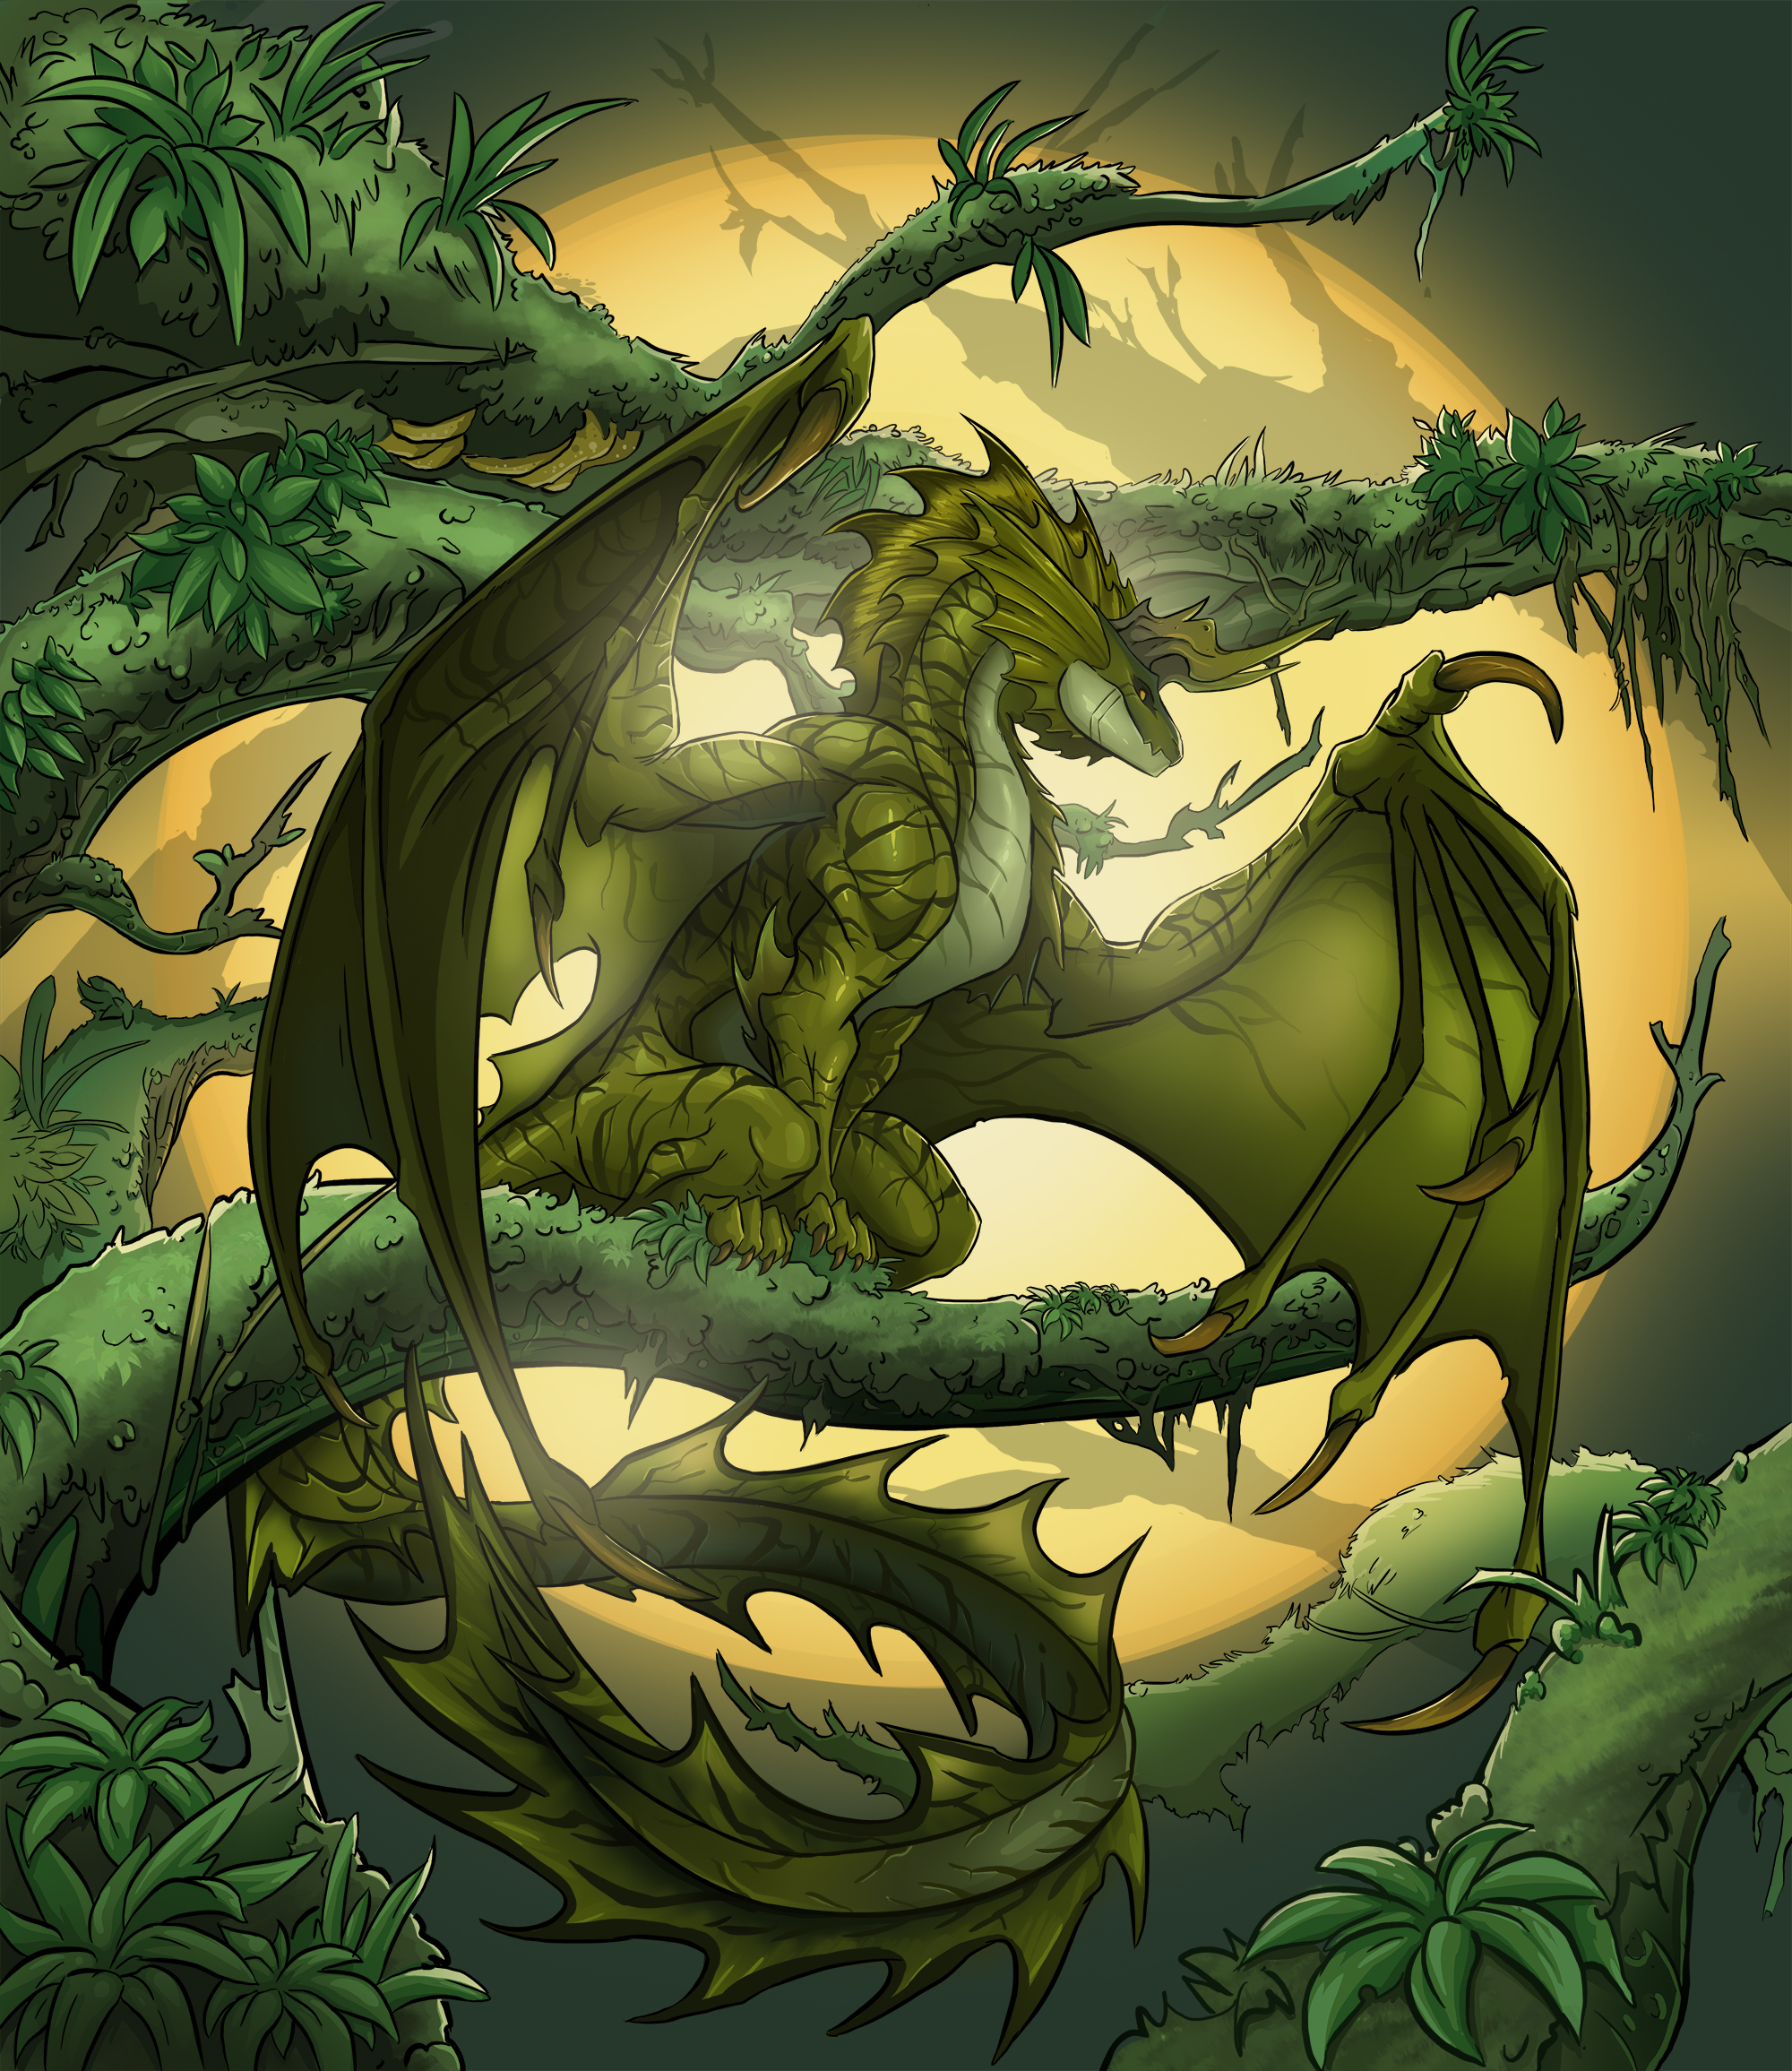 Wood Dragon by Yogh-Art on DeviantArt